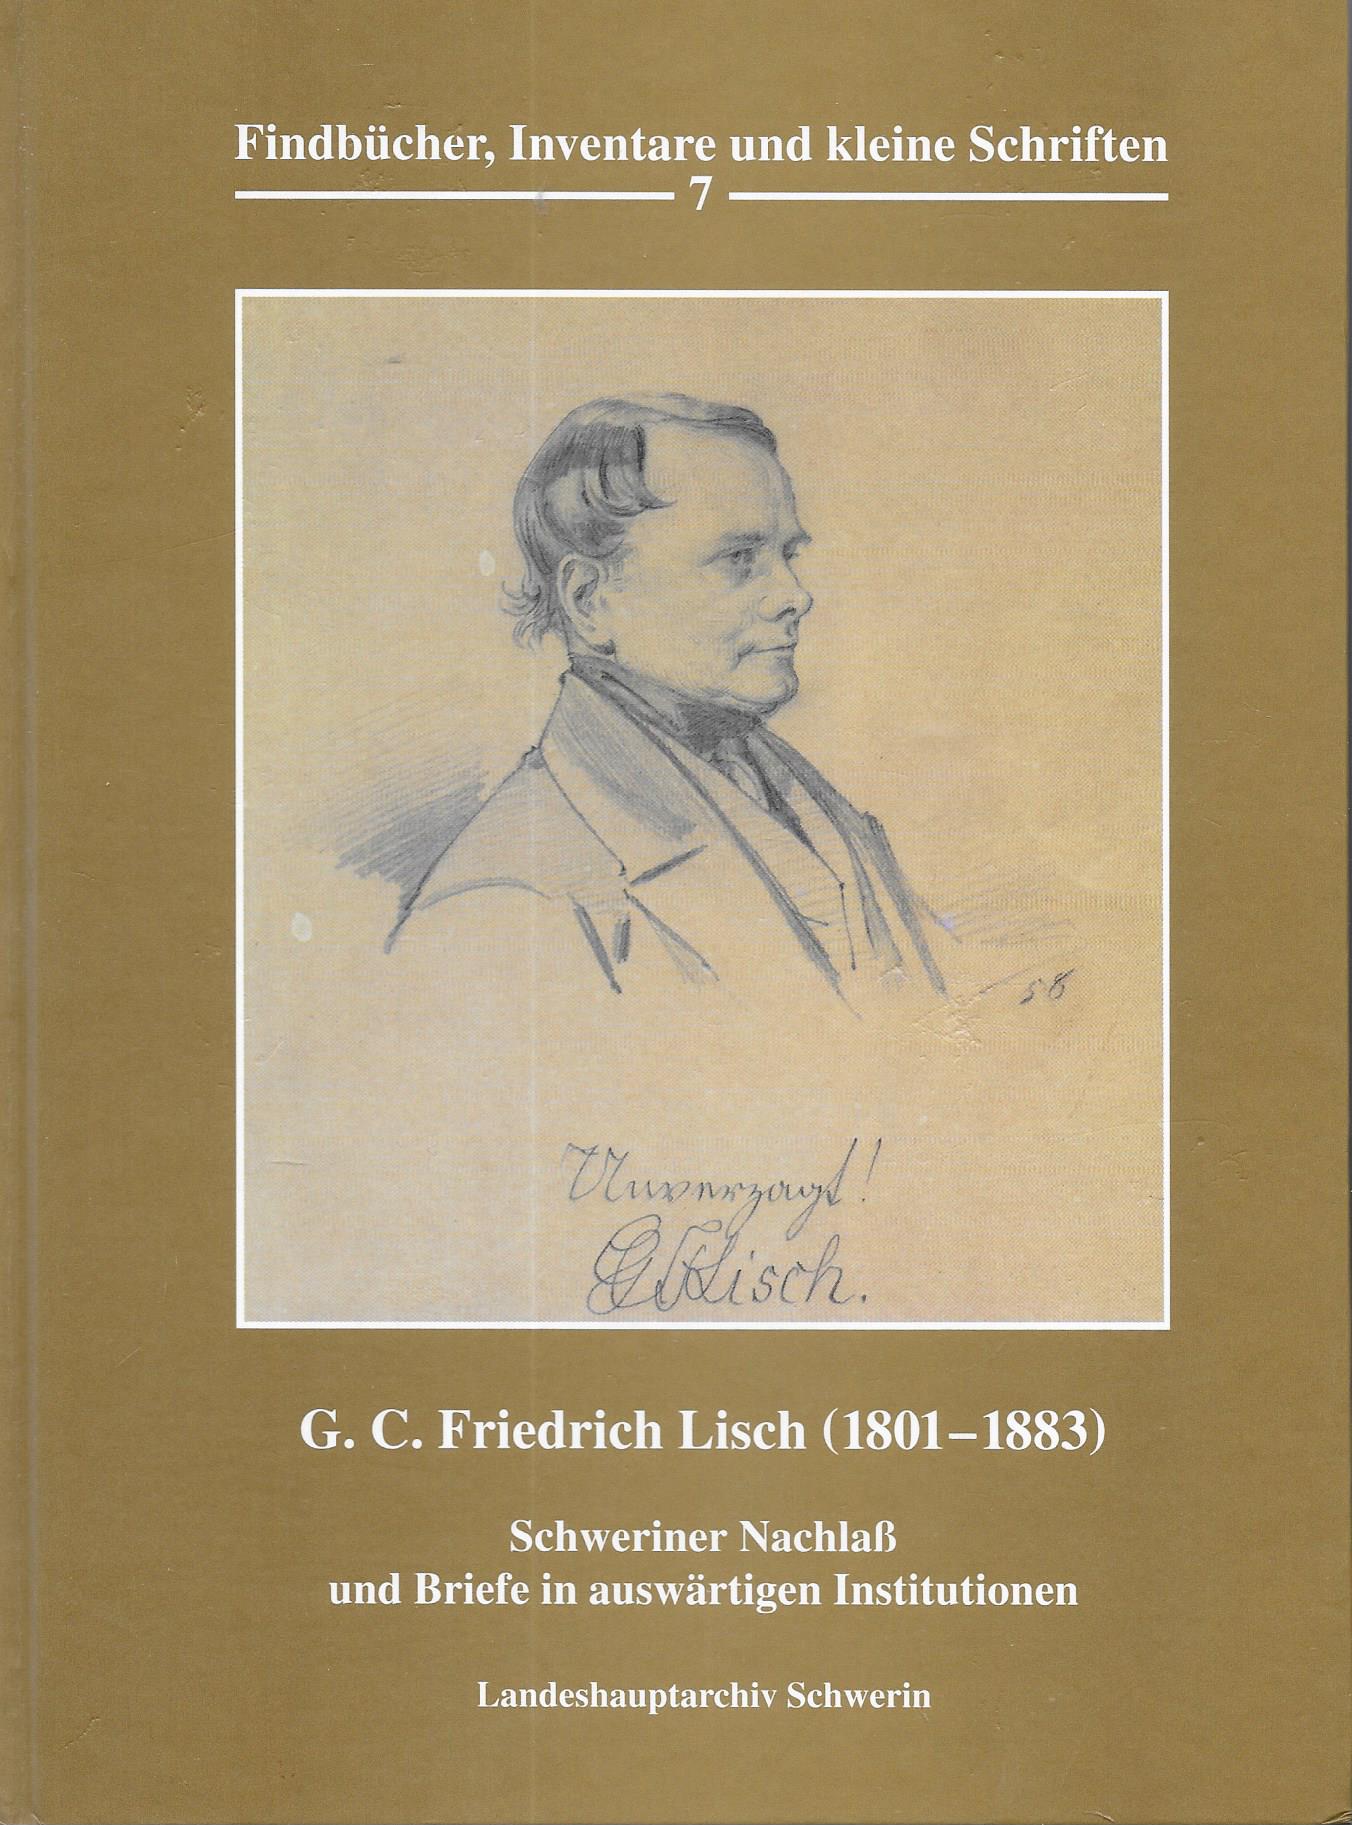 G.C.Friedrich Lisch (1801-1883)- Schweriner Nachlaß und Briefe in auswärtigen Institutionen - Findbuch zum Bestand 10.9-L/6 - Andreas Röpcke